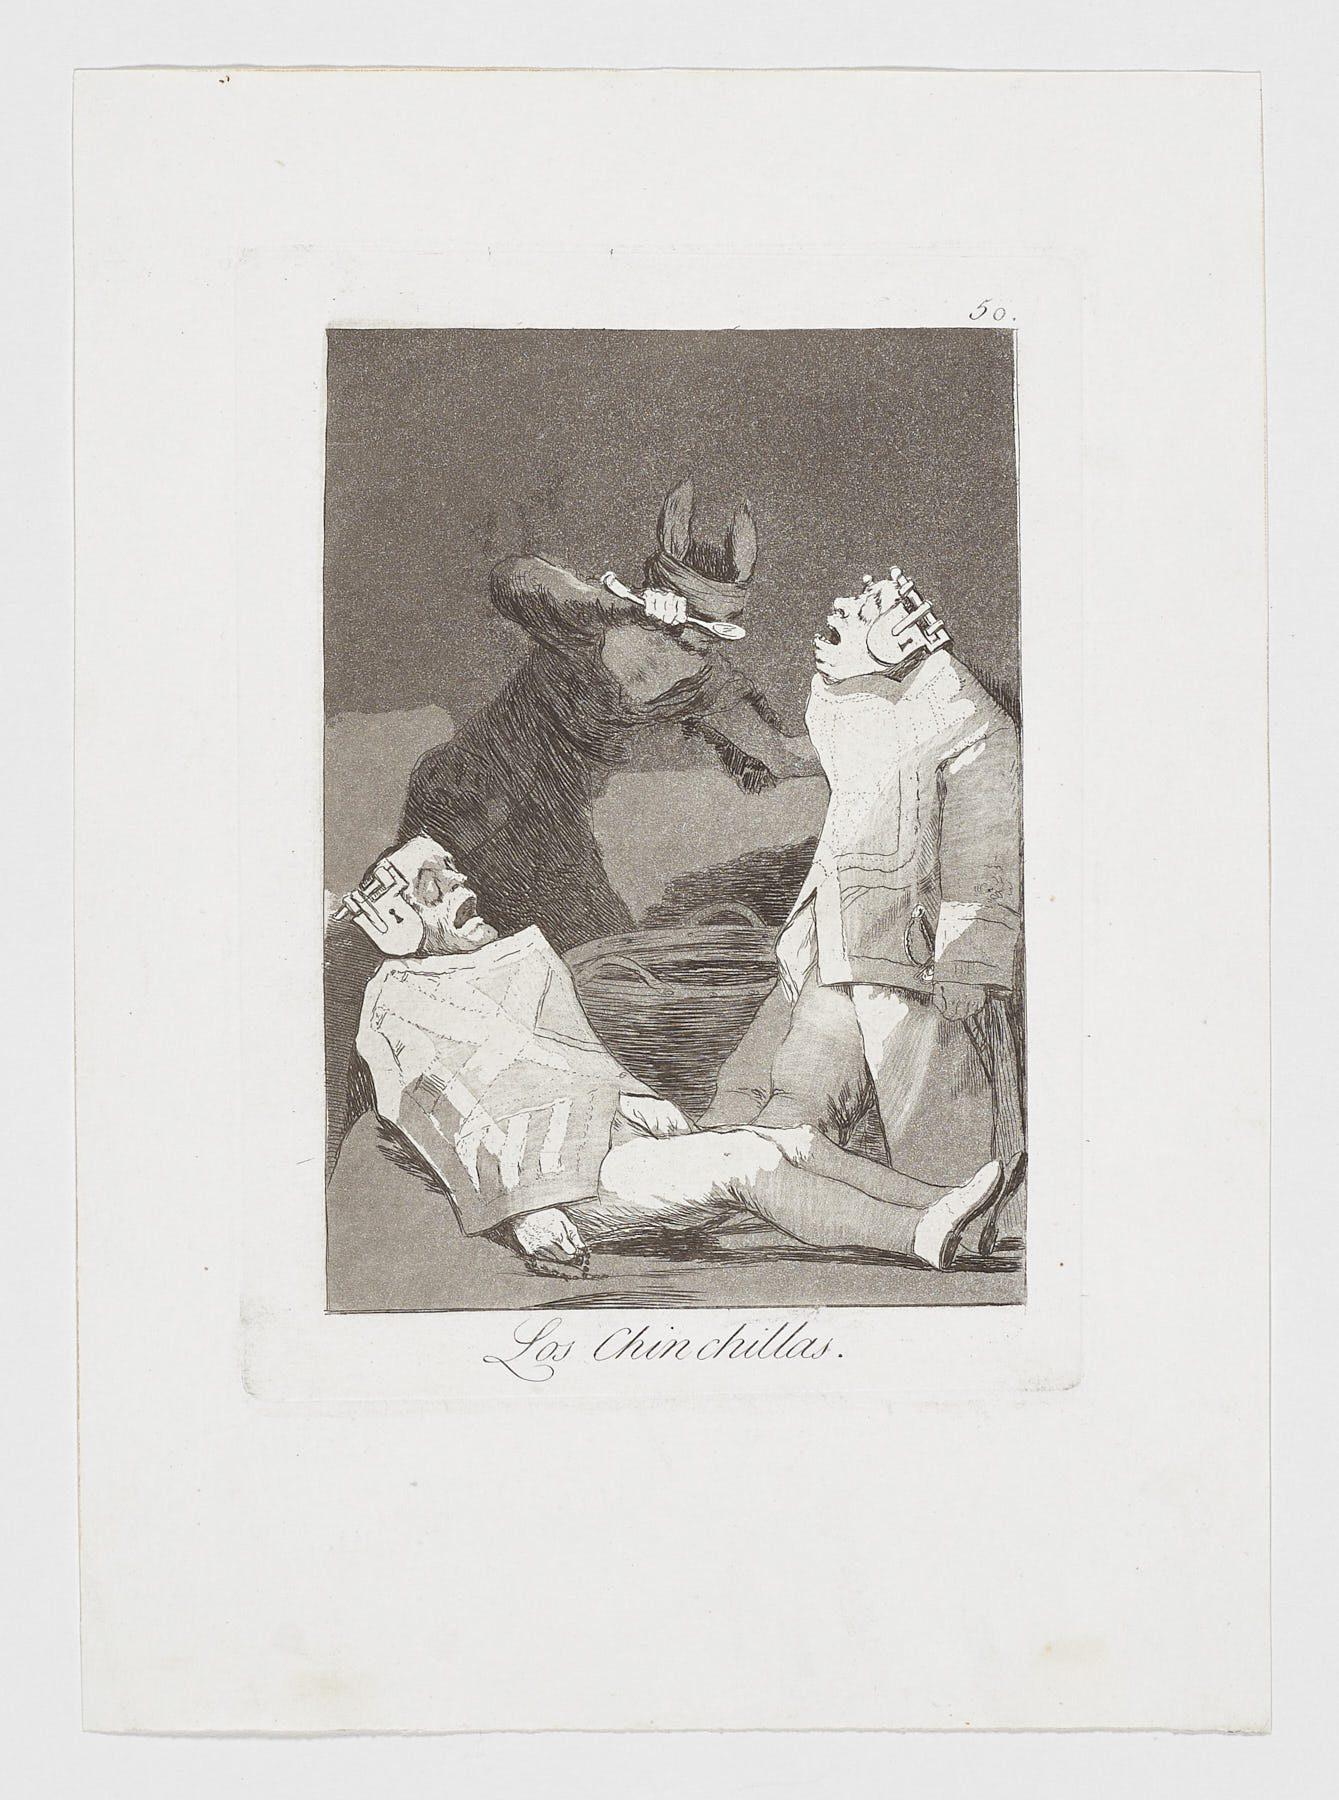 Francisco De Goya Caprichos Los Chinchillas 2nd edition original art print 